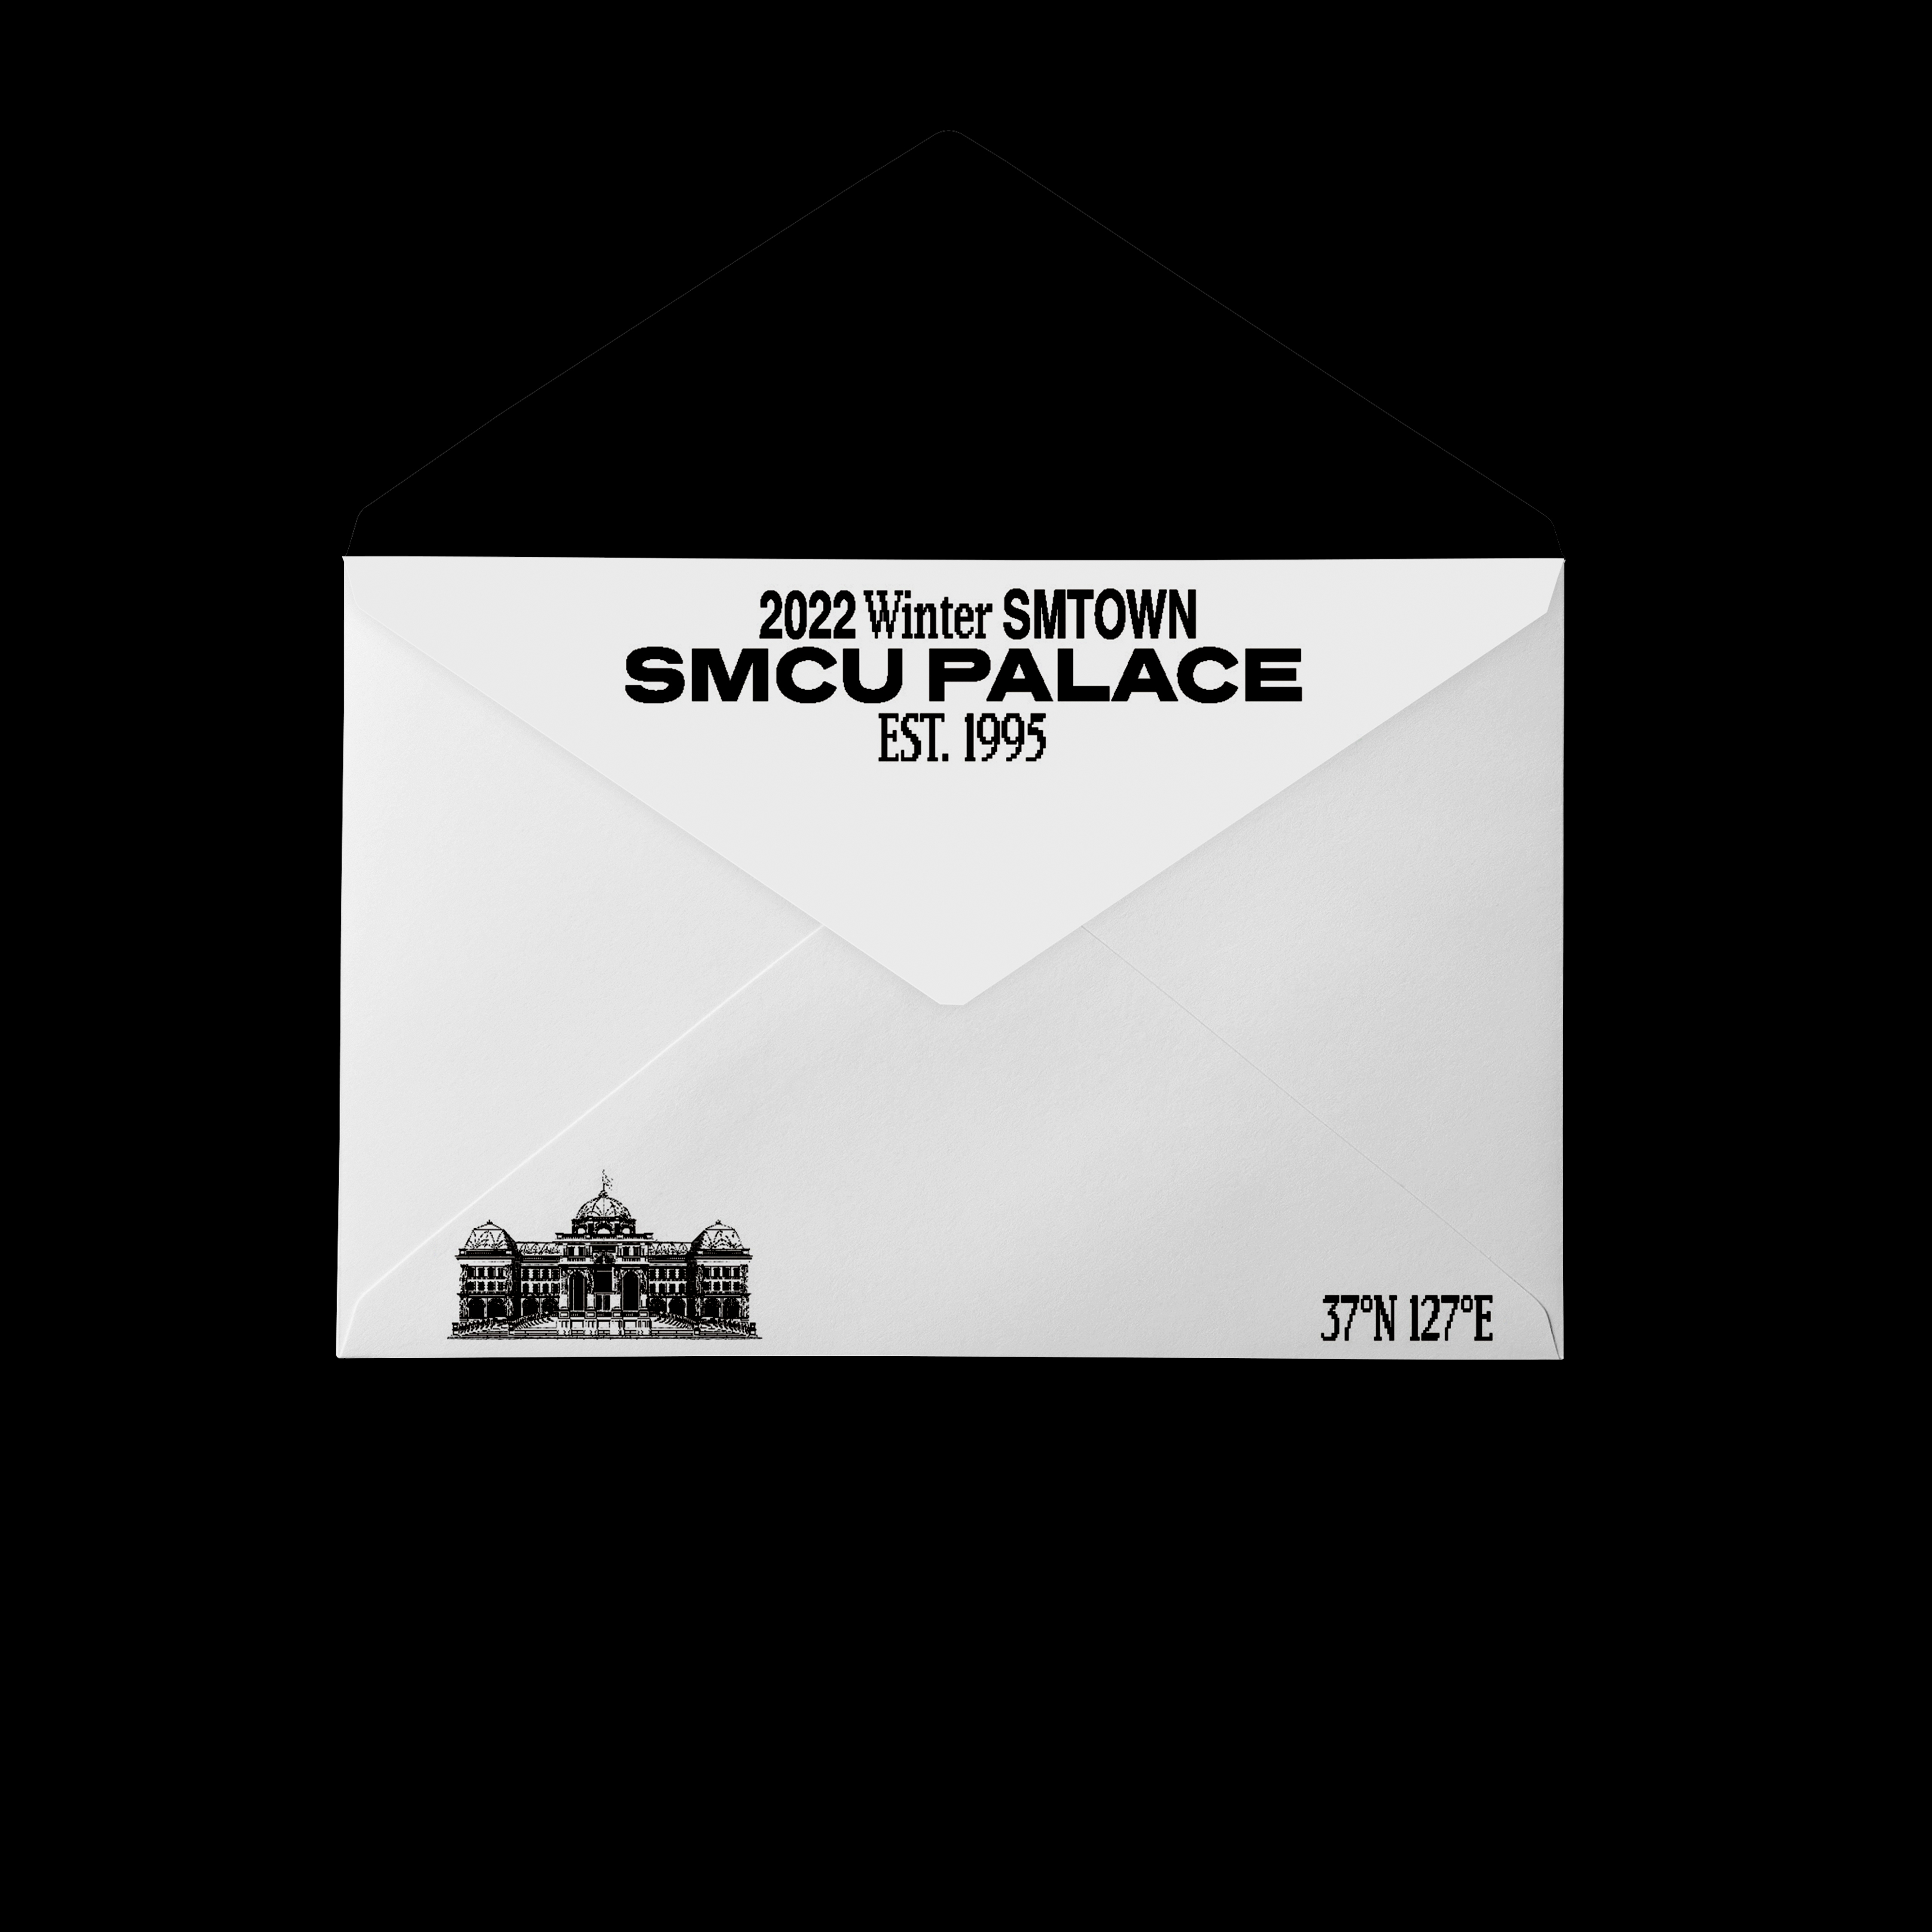 [全款 裸专] WayV - 2022 Winter SMTOWN : SMCU PALACE (GUEST. WayV) (Membership Card Ver.) _kpop散粉收容所